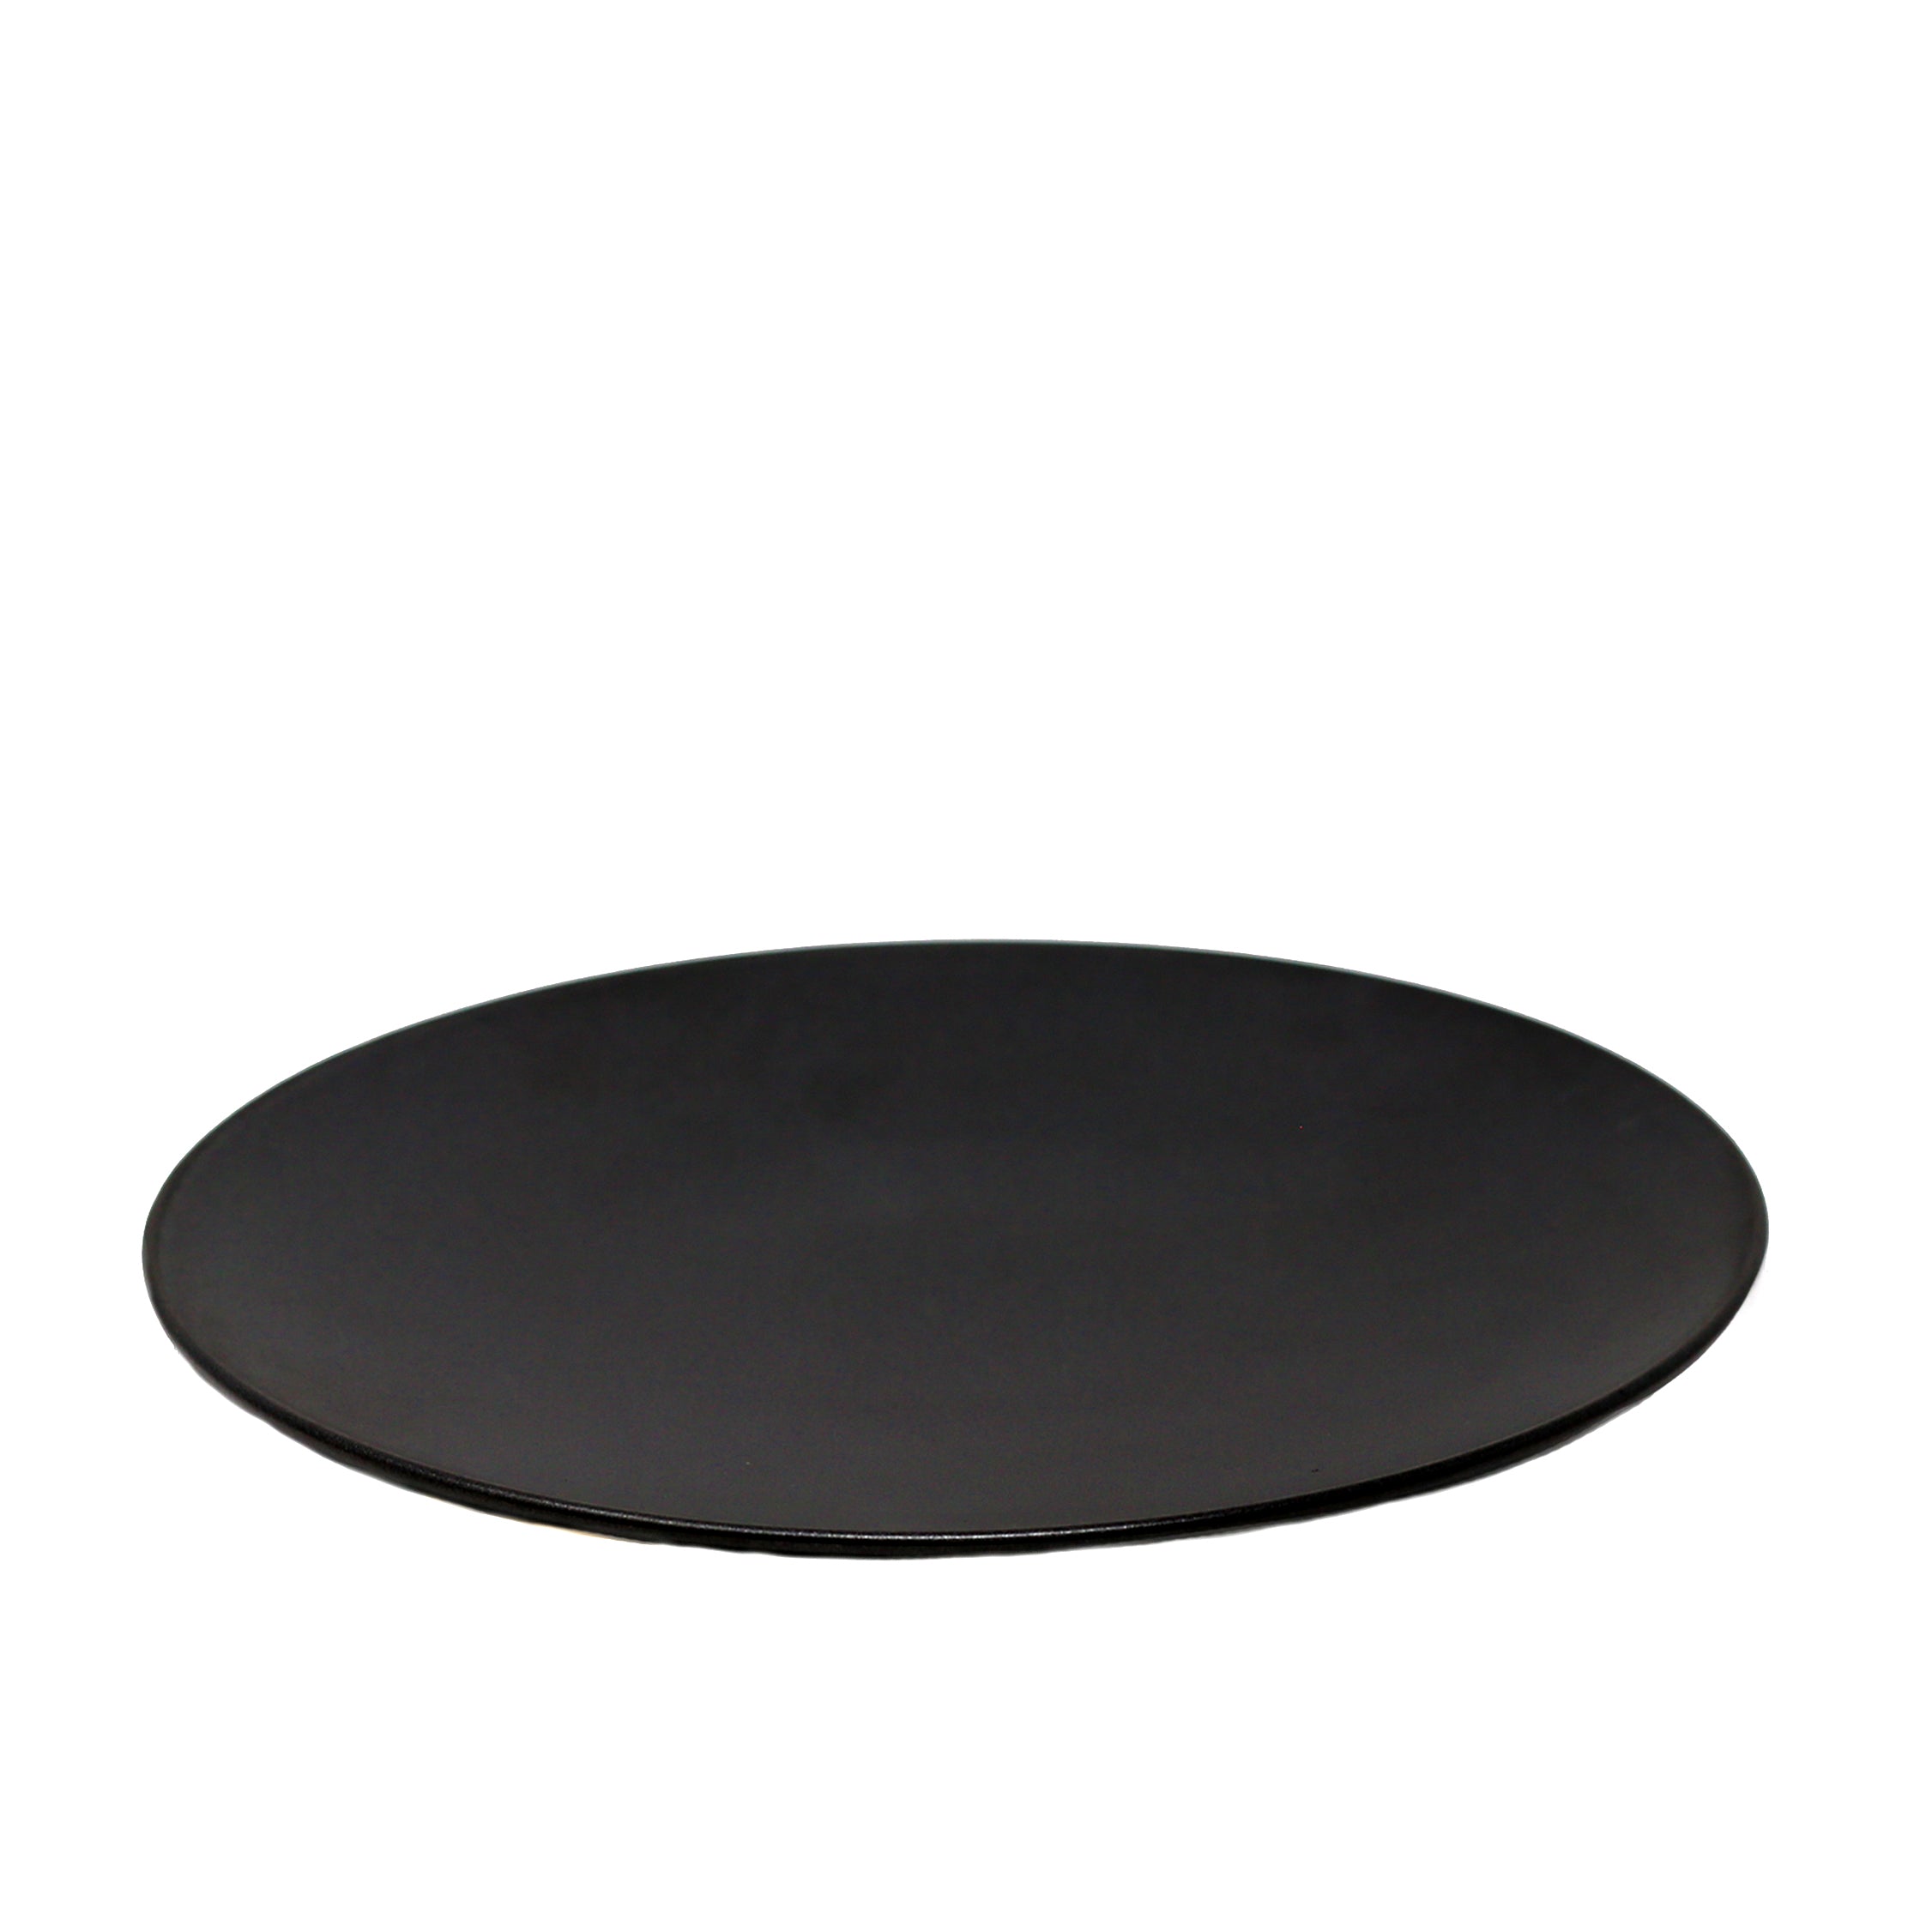 Assiette ronde forme coupe noire 12.8"    - Planet Tableware - Assiette - 